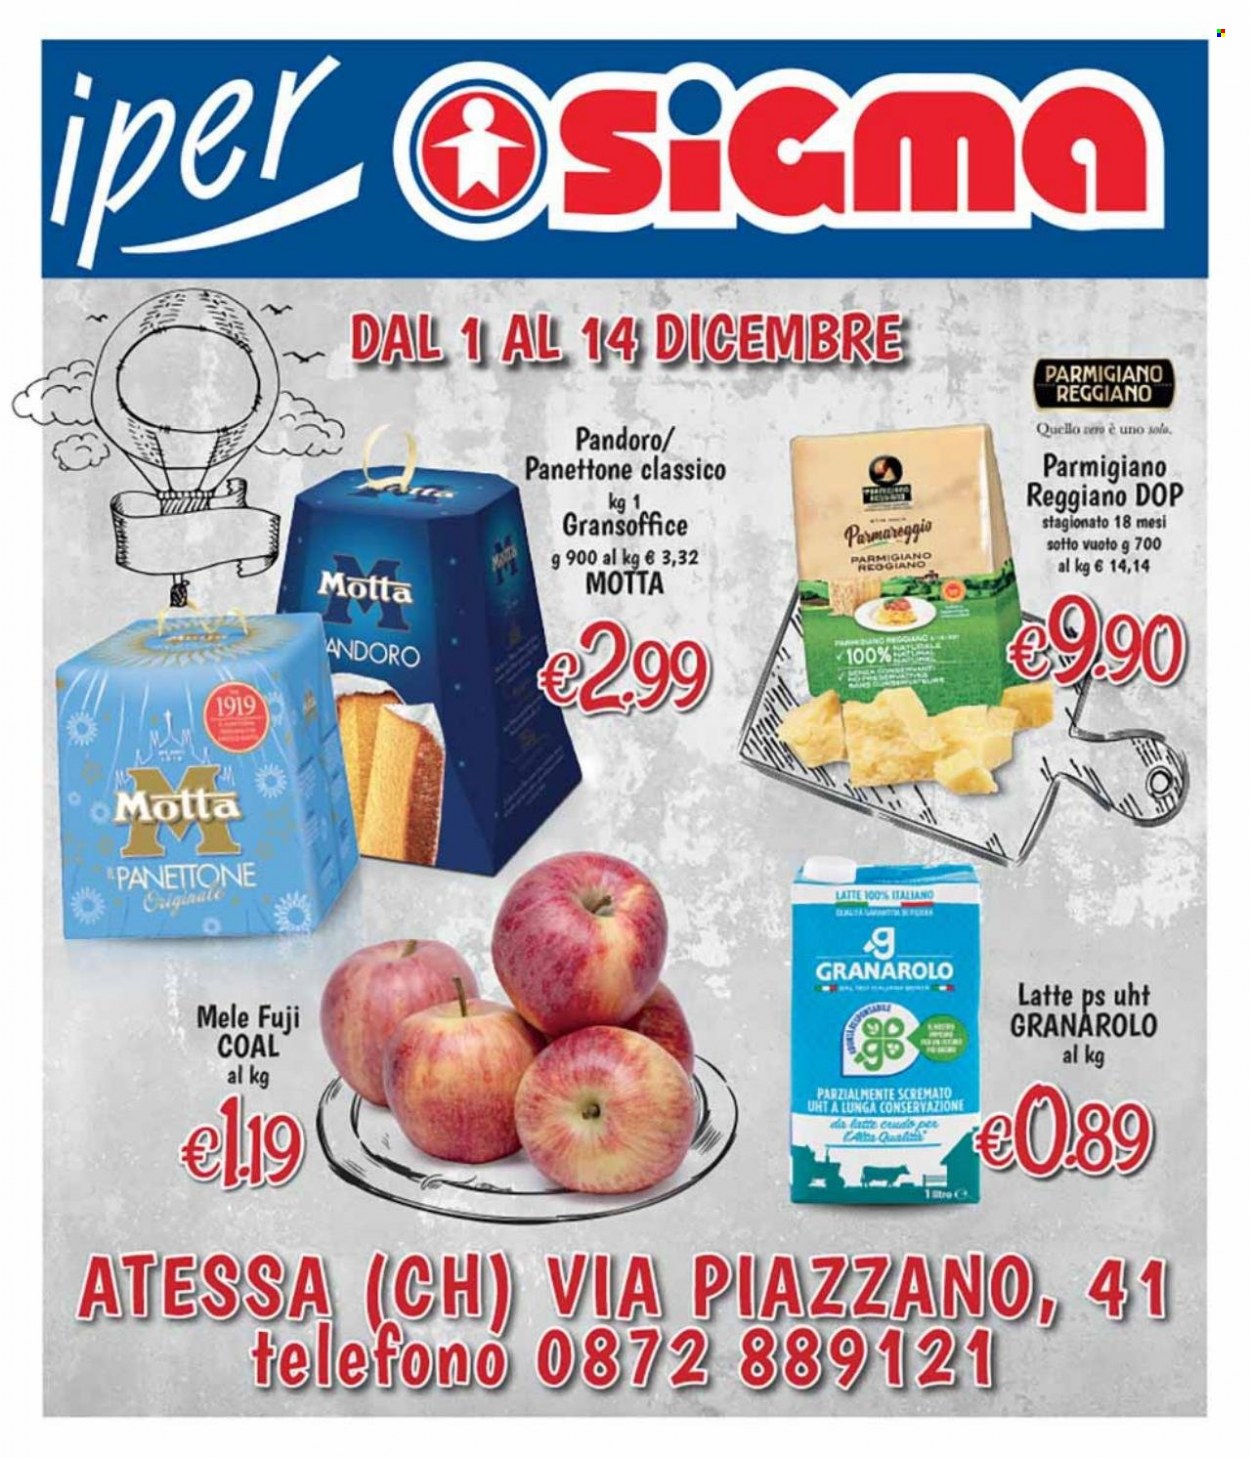 thumbnail - Volantino Sigma - 1/12/2021 - 14/12/2021 - Prodotti in offerta - pandoro, panettone, Motta, Granarolo, formaggio, parmigiano, Parmareggio. Pagina 1.